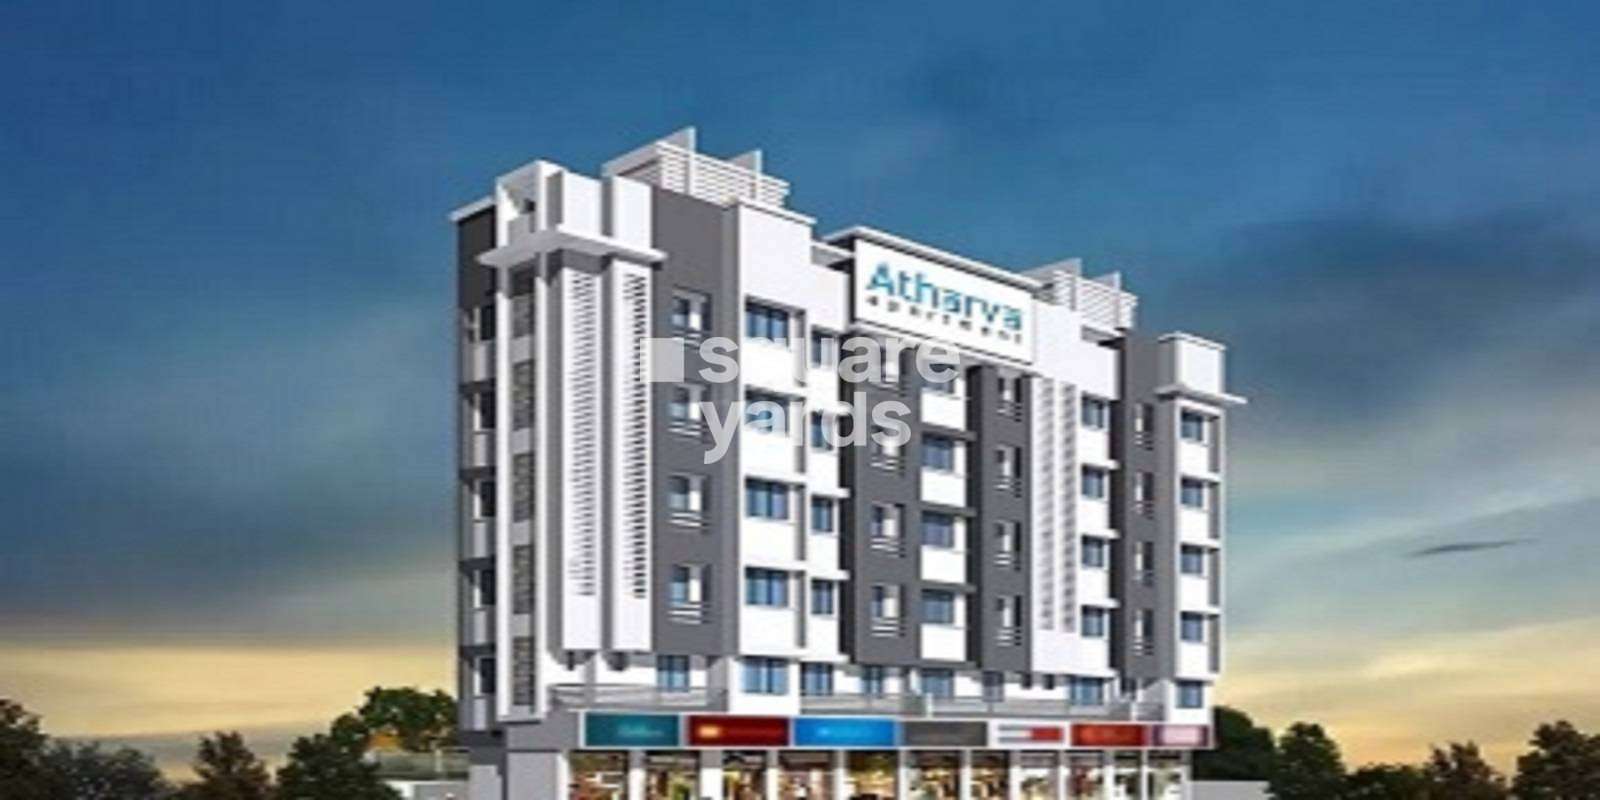 Atharva Apartment Virar Cover Image